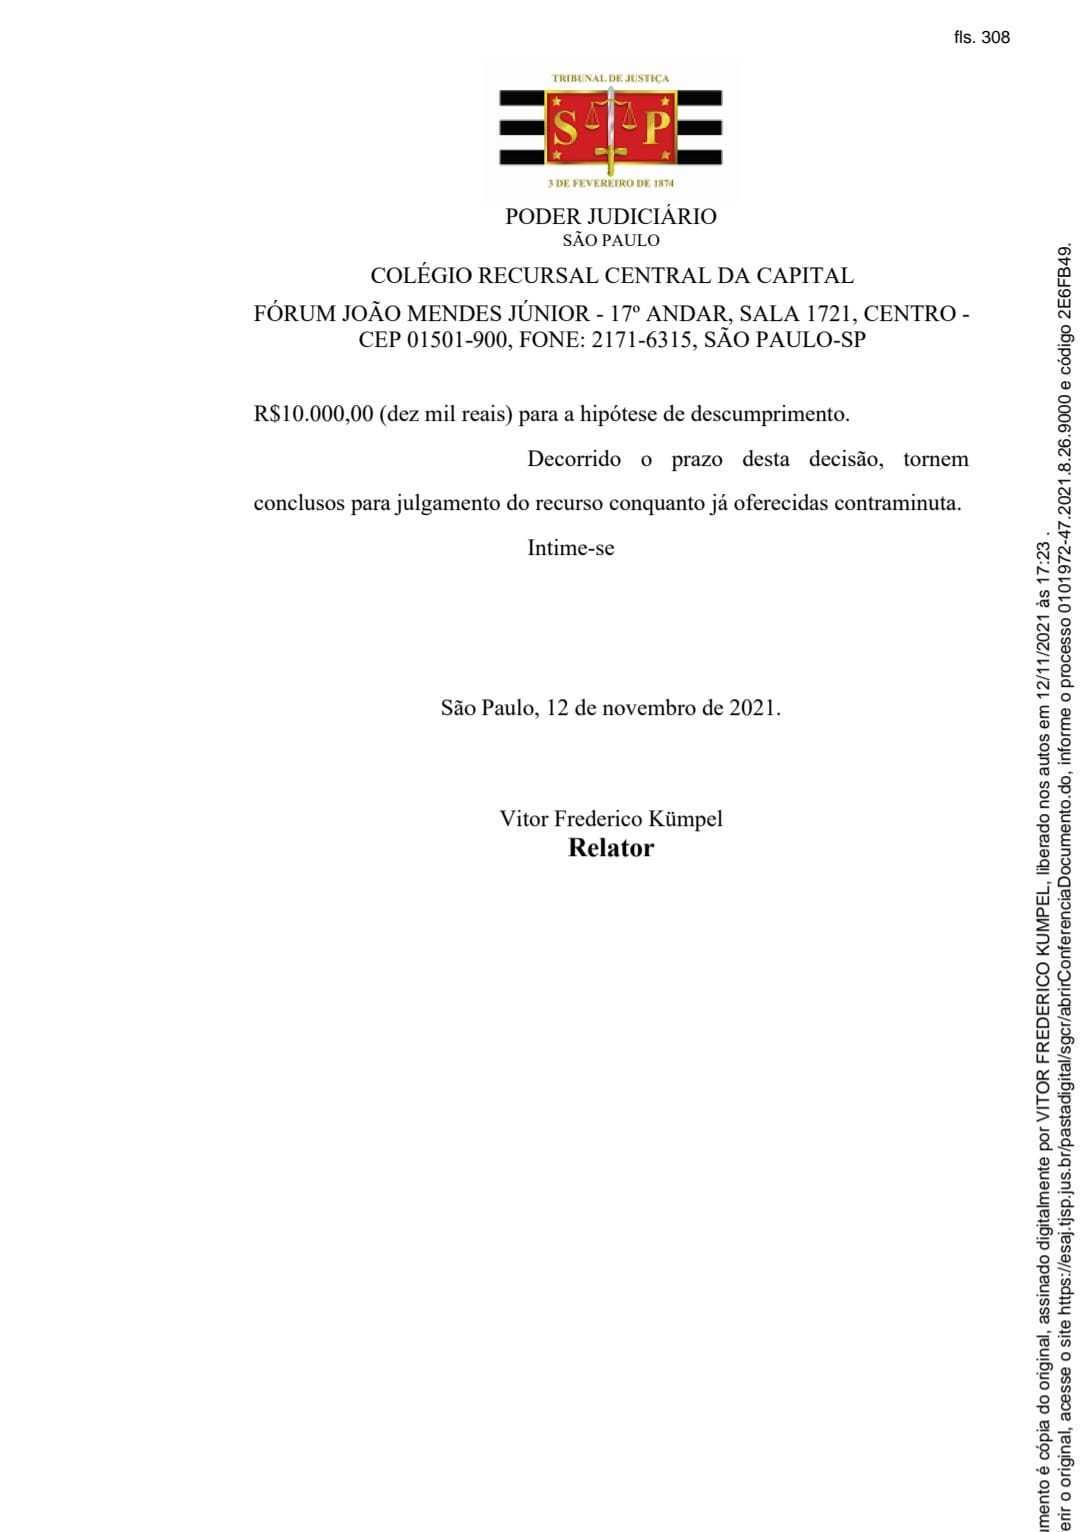 Decisão inicial do relator Vitor Frederico Kumpel